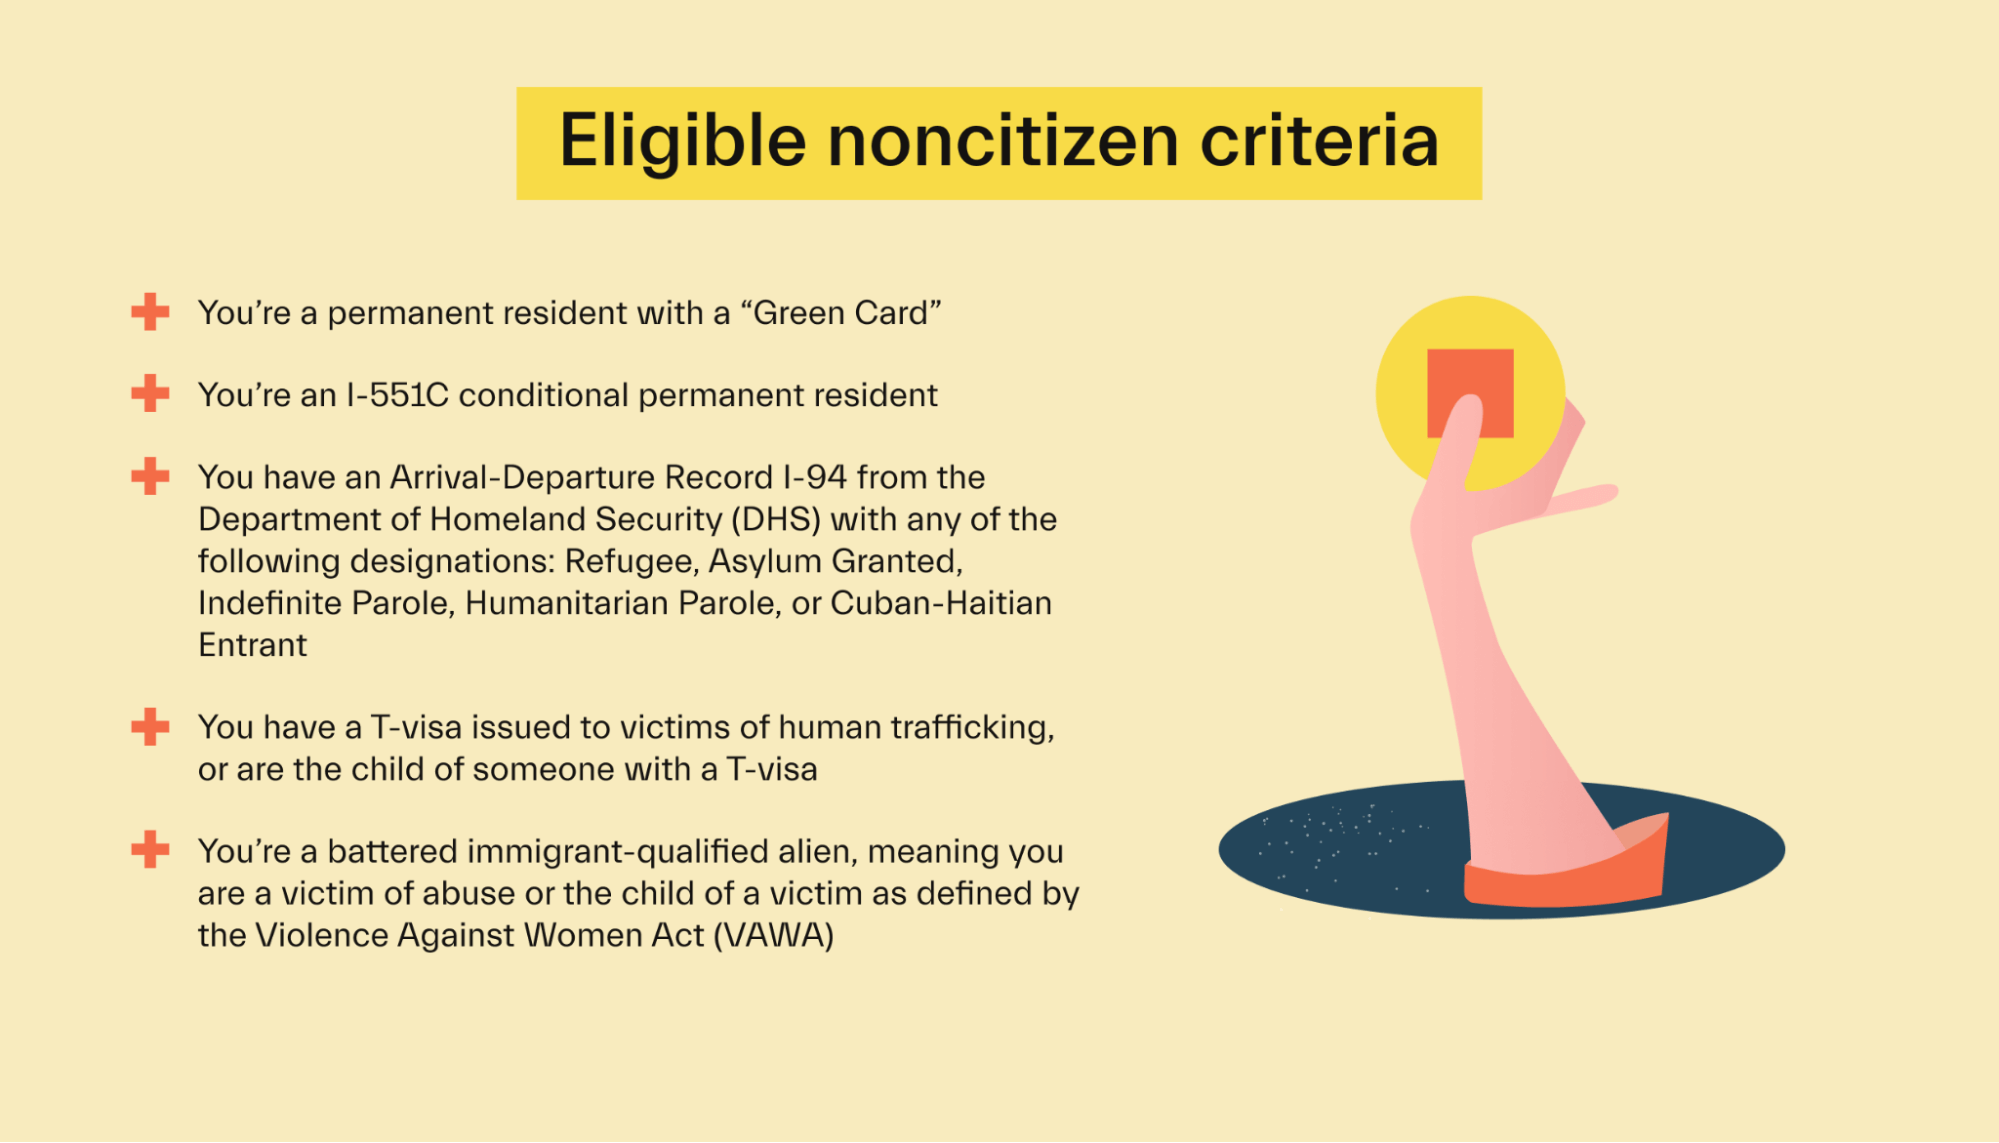 Eligible noncitizen criteria